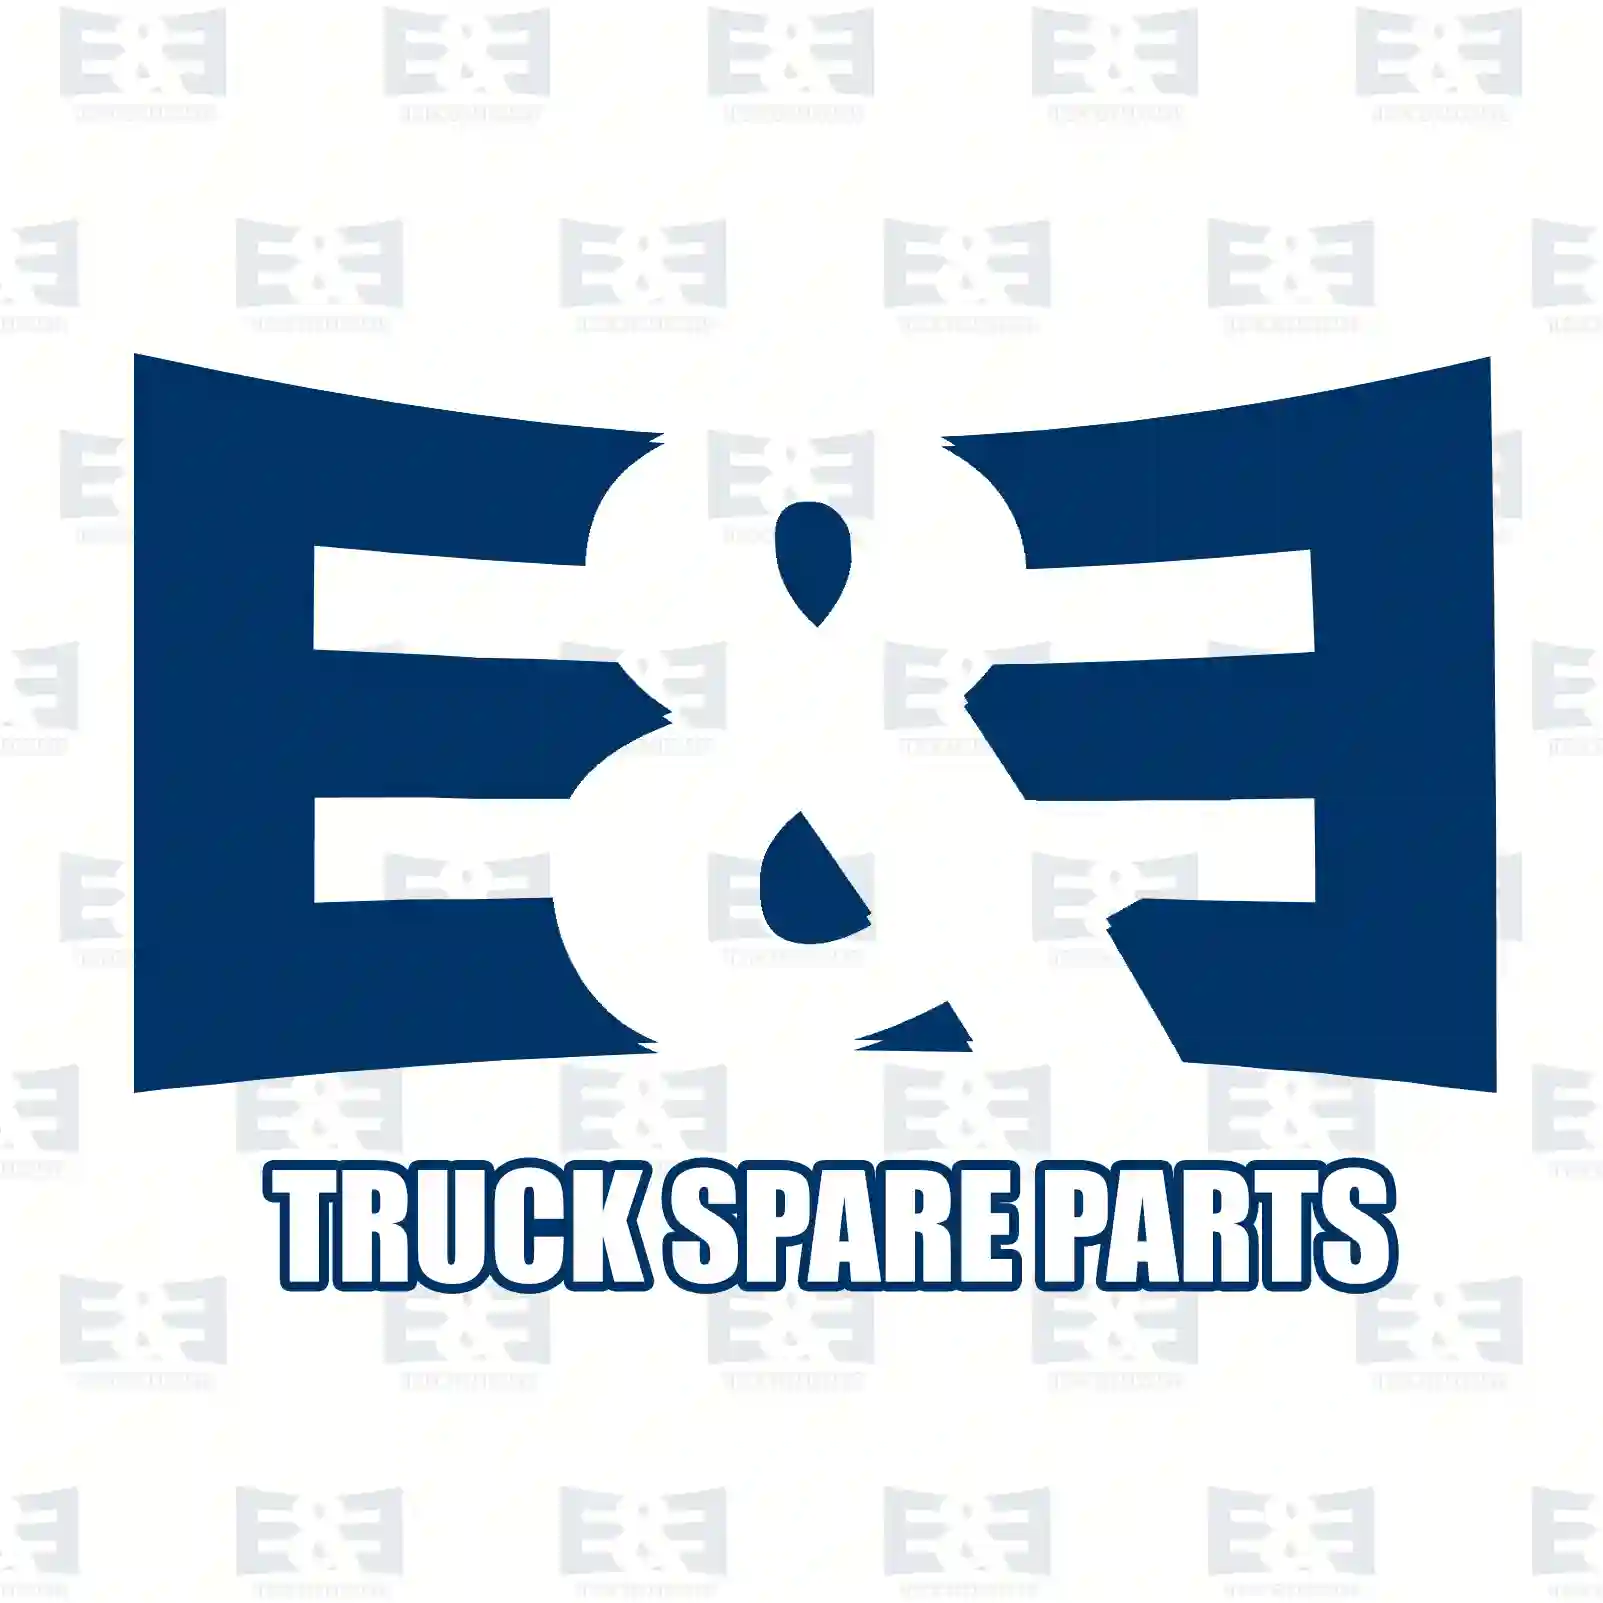 O-ring, 2E2285277, 1338019, 381962, ZG02841-0008, ||  2E2285277 E&E Truck Spare Parts | Truck Spare Parts, Auotomotive Spare Parts O-ring, 2E2285277, 1338019, 381962, ZG02841-0008, ||  2E2285277 E&E Truck Spare Parts | Truck Spare Parts, Auotomotive Spare Parts